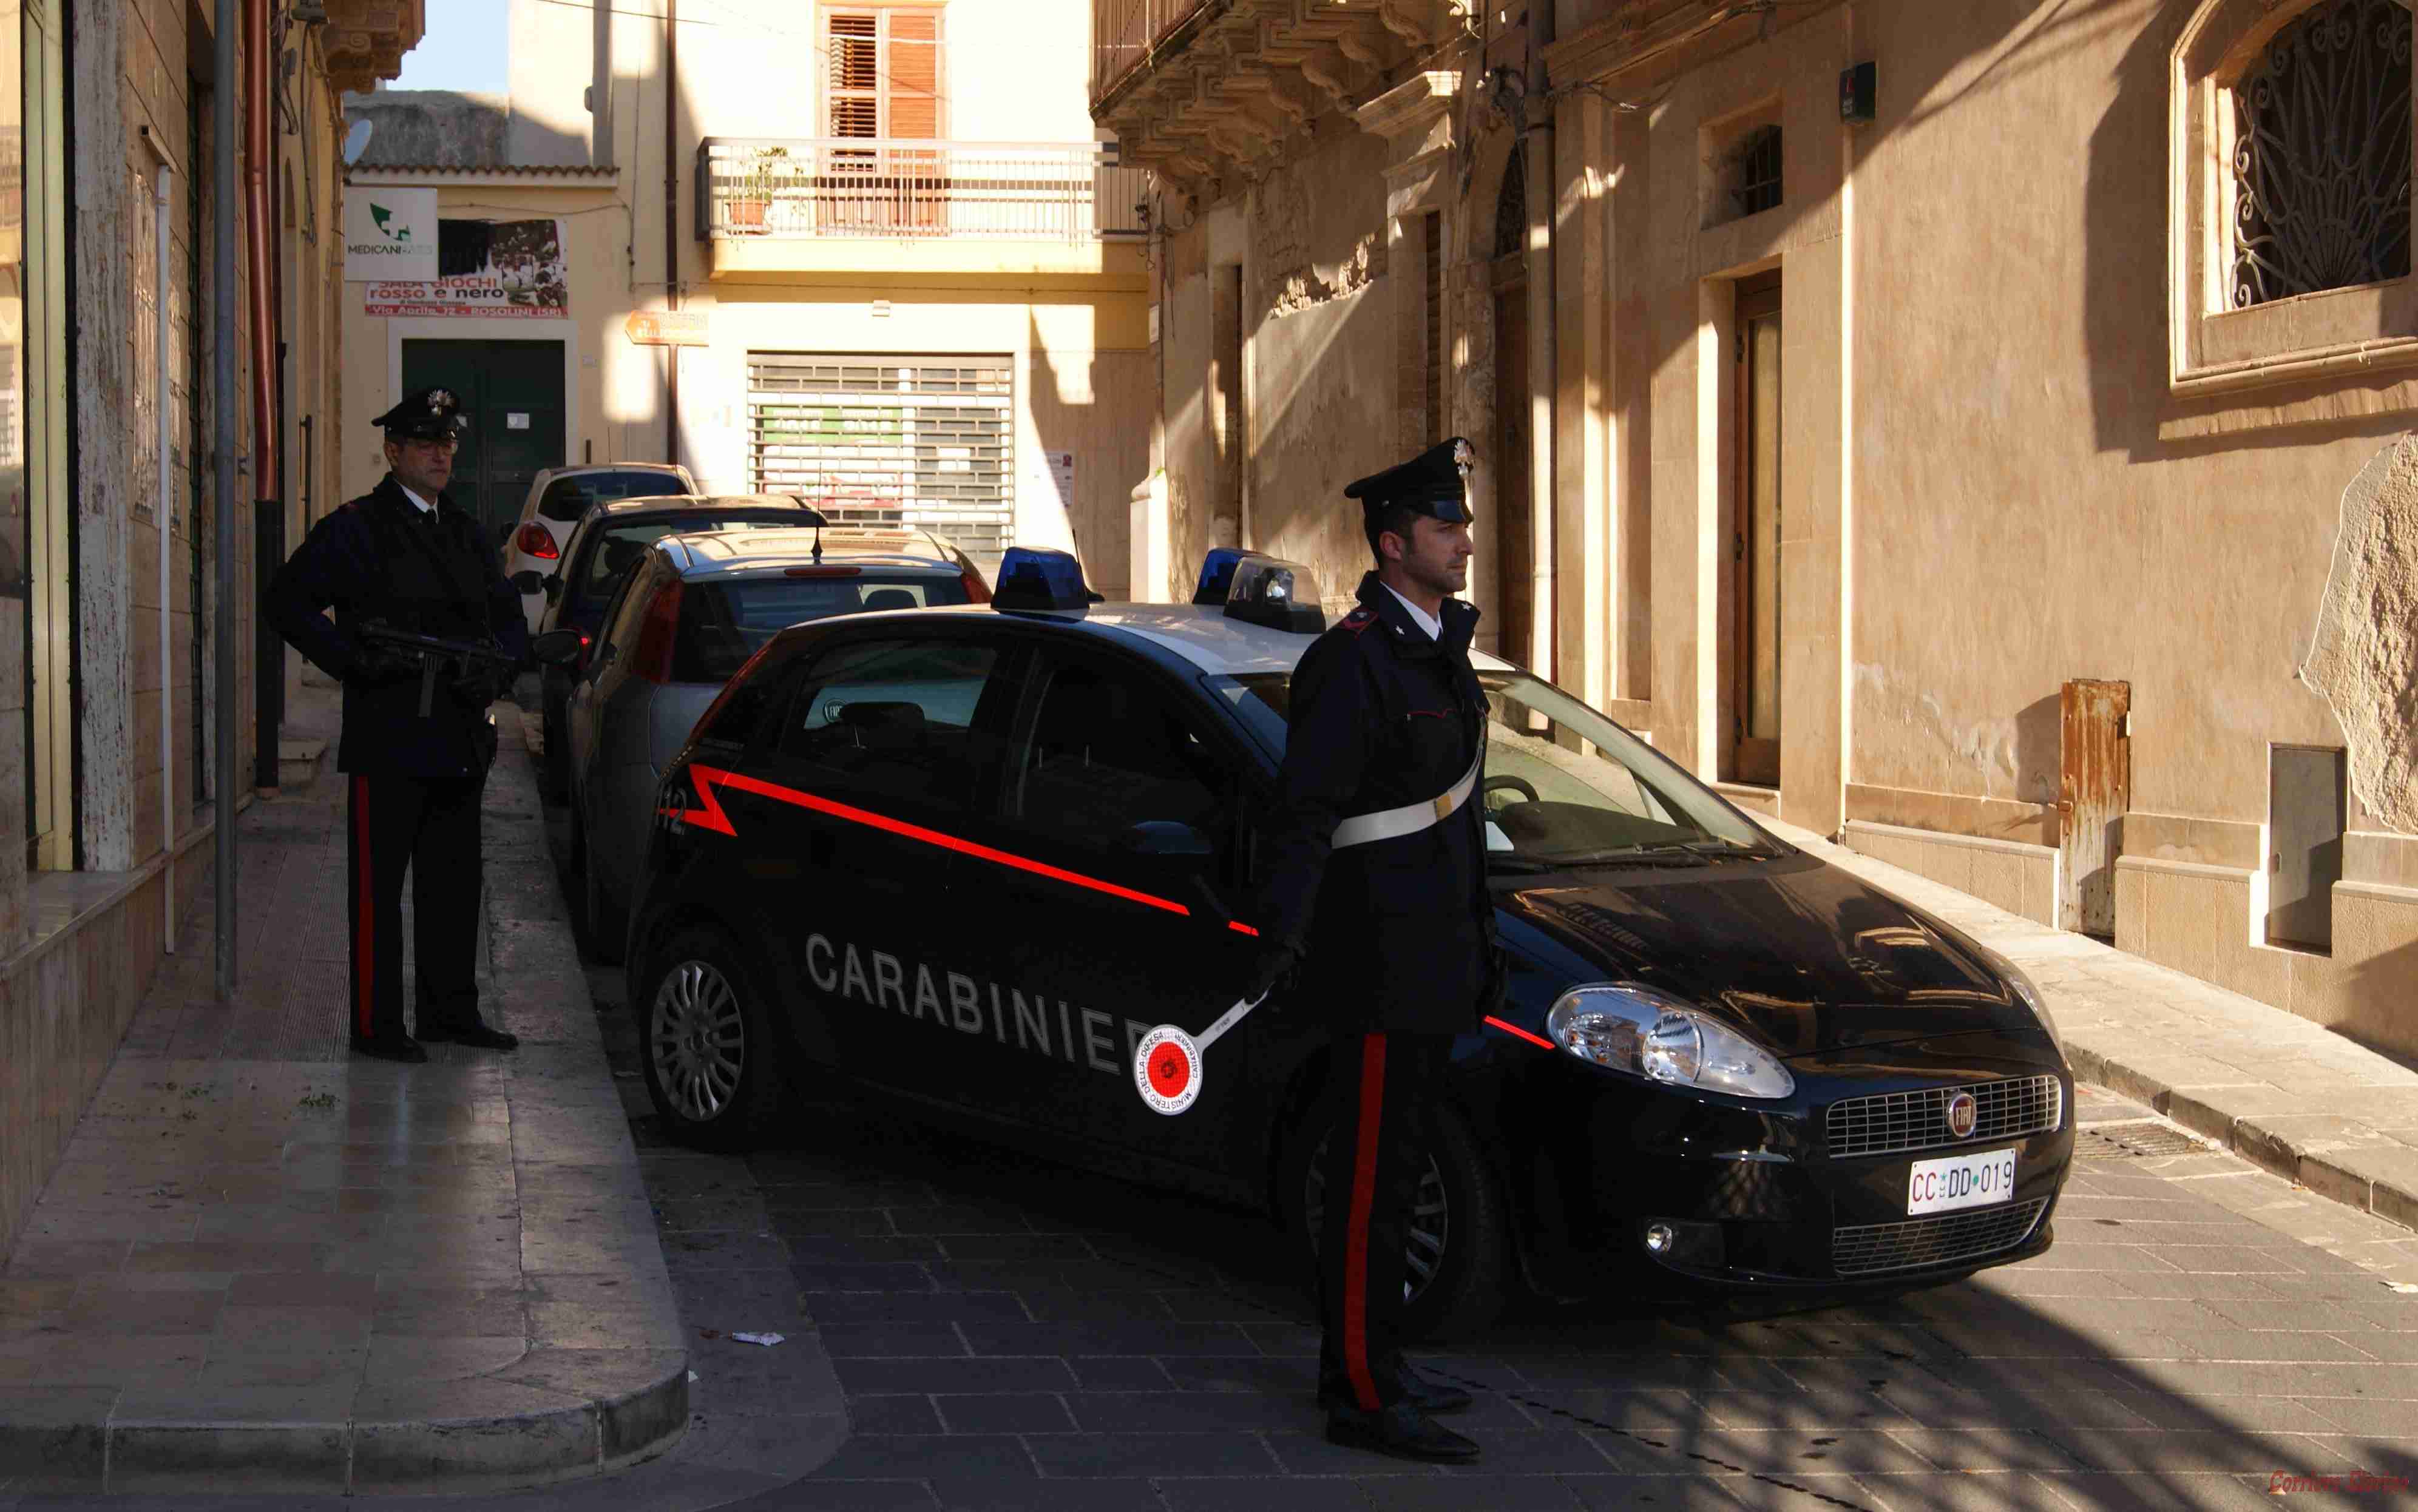 Erboristeria alla “Cannabis” aperta a Rosolini: sequestrati dai Carabinieri e dai Nas 300 confezioni